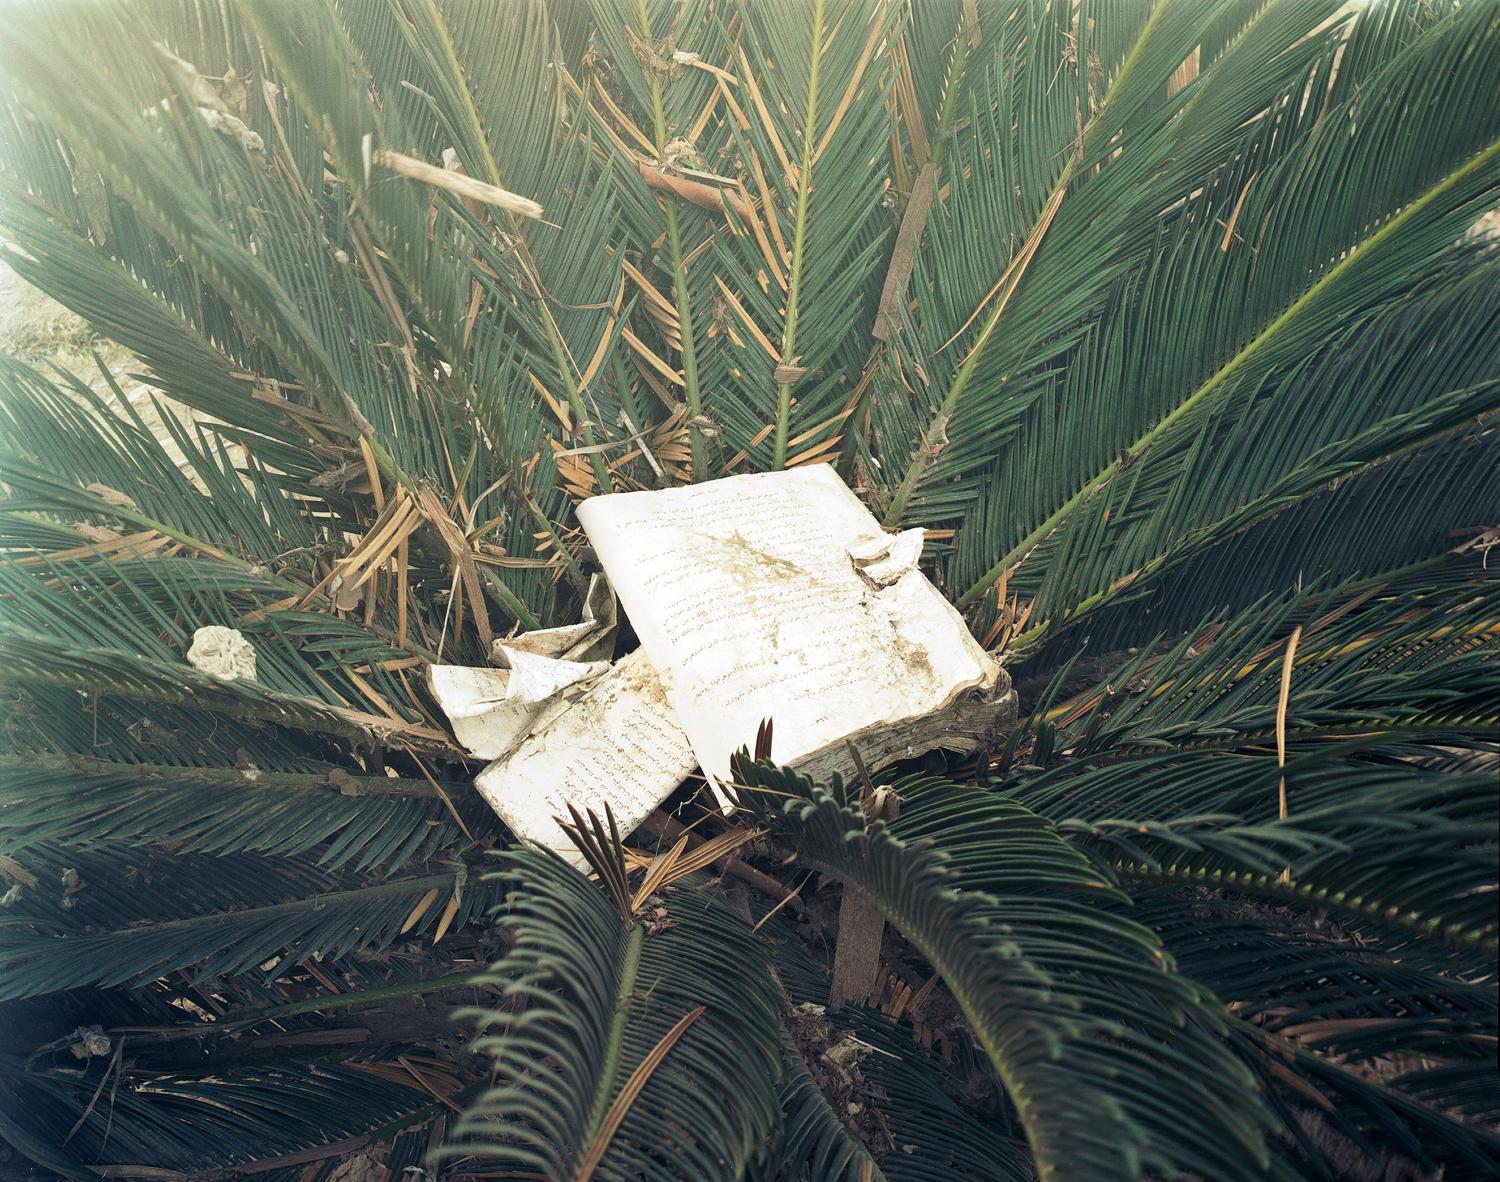 Sasha Bezzubov Color Photograph - "Tsunami #19" book and palm, contemporary conceptual color photograph